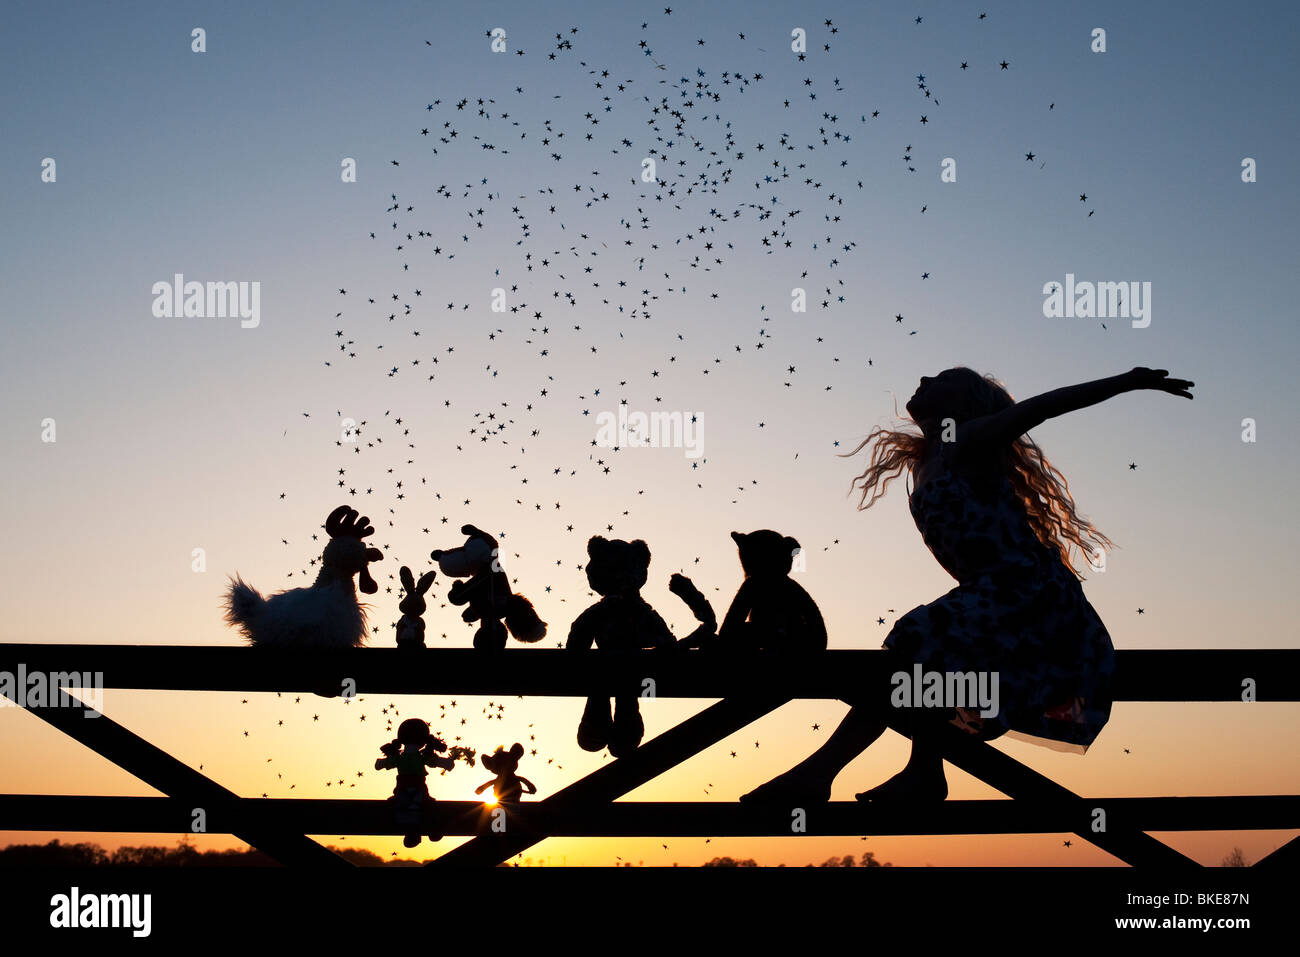 Ragazza gettando stelle su una rag doll, pollo, la volpe, il coniglio, cat e orsacchiotto di peluche seduto su un cancello al tramonto. Silhouette Foto Stock